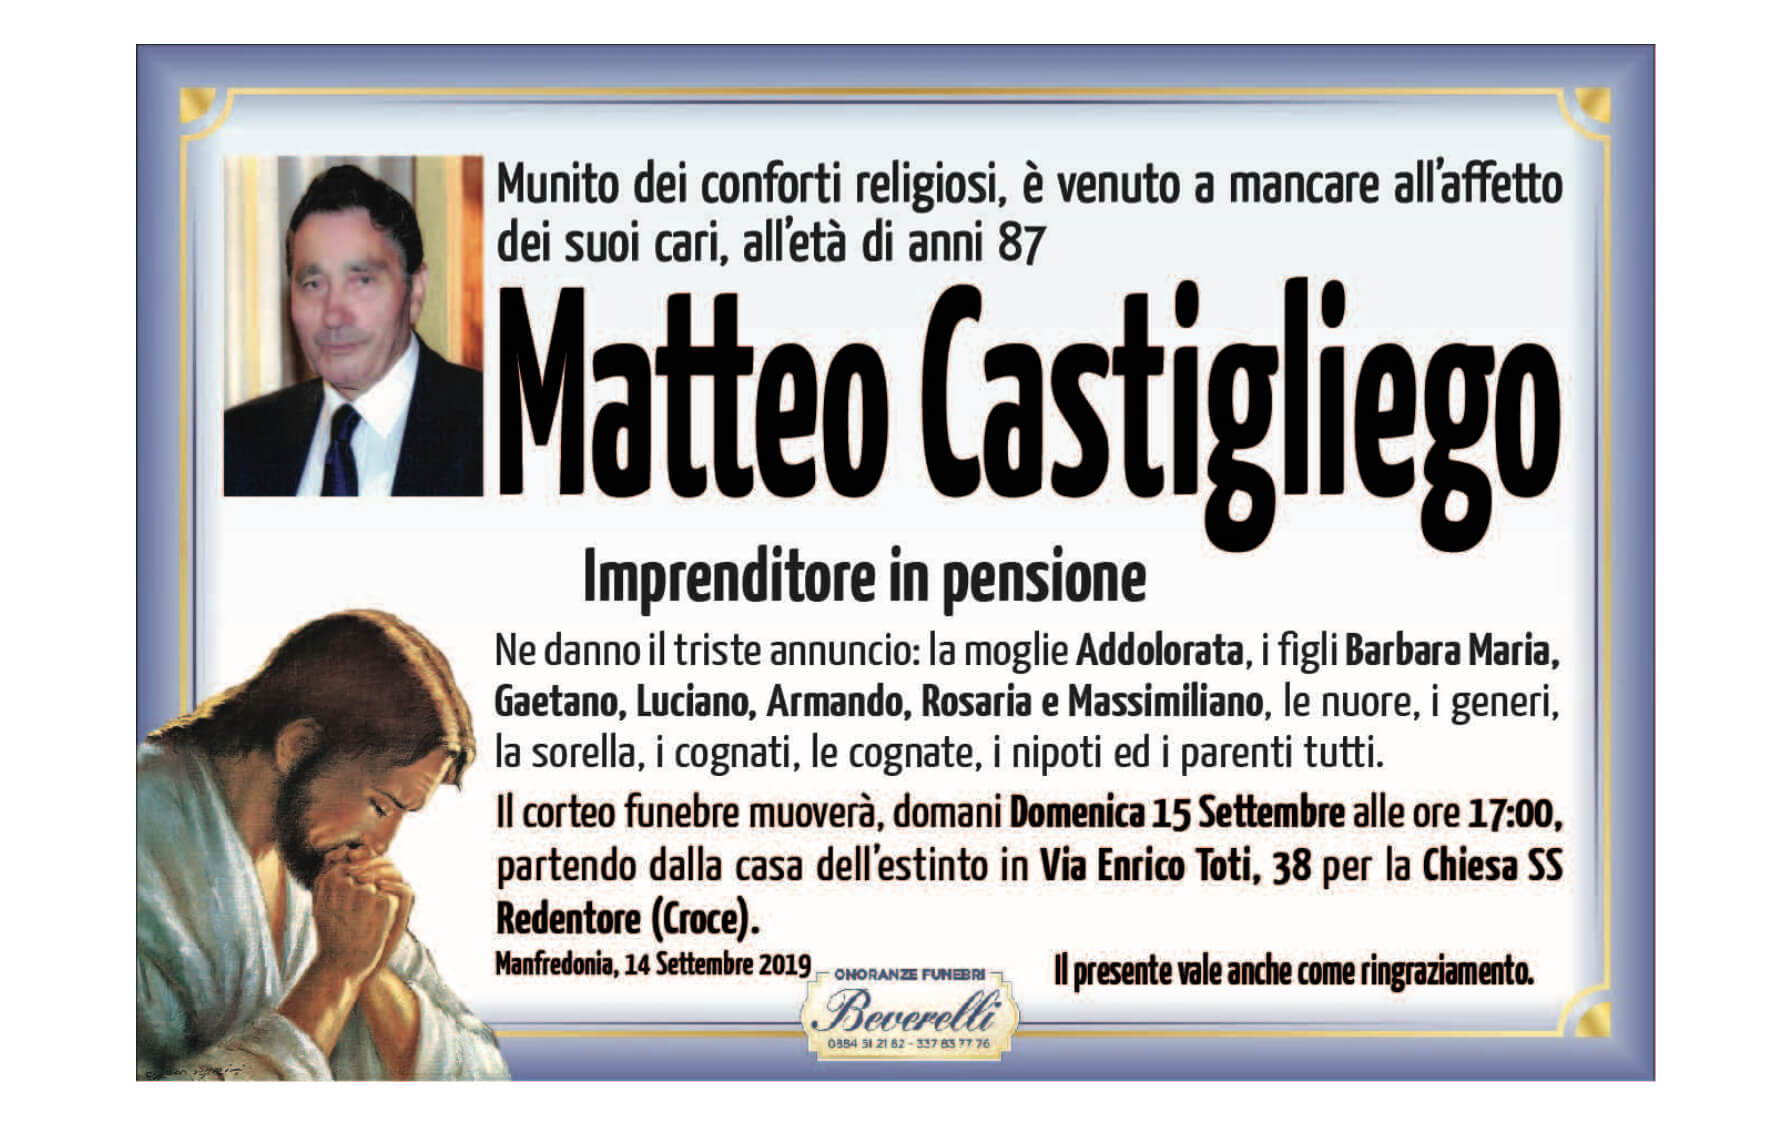 Matteo Castigliego